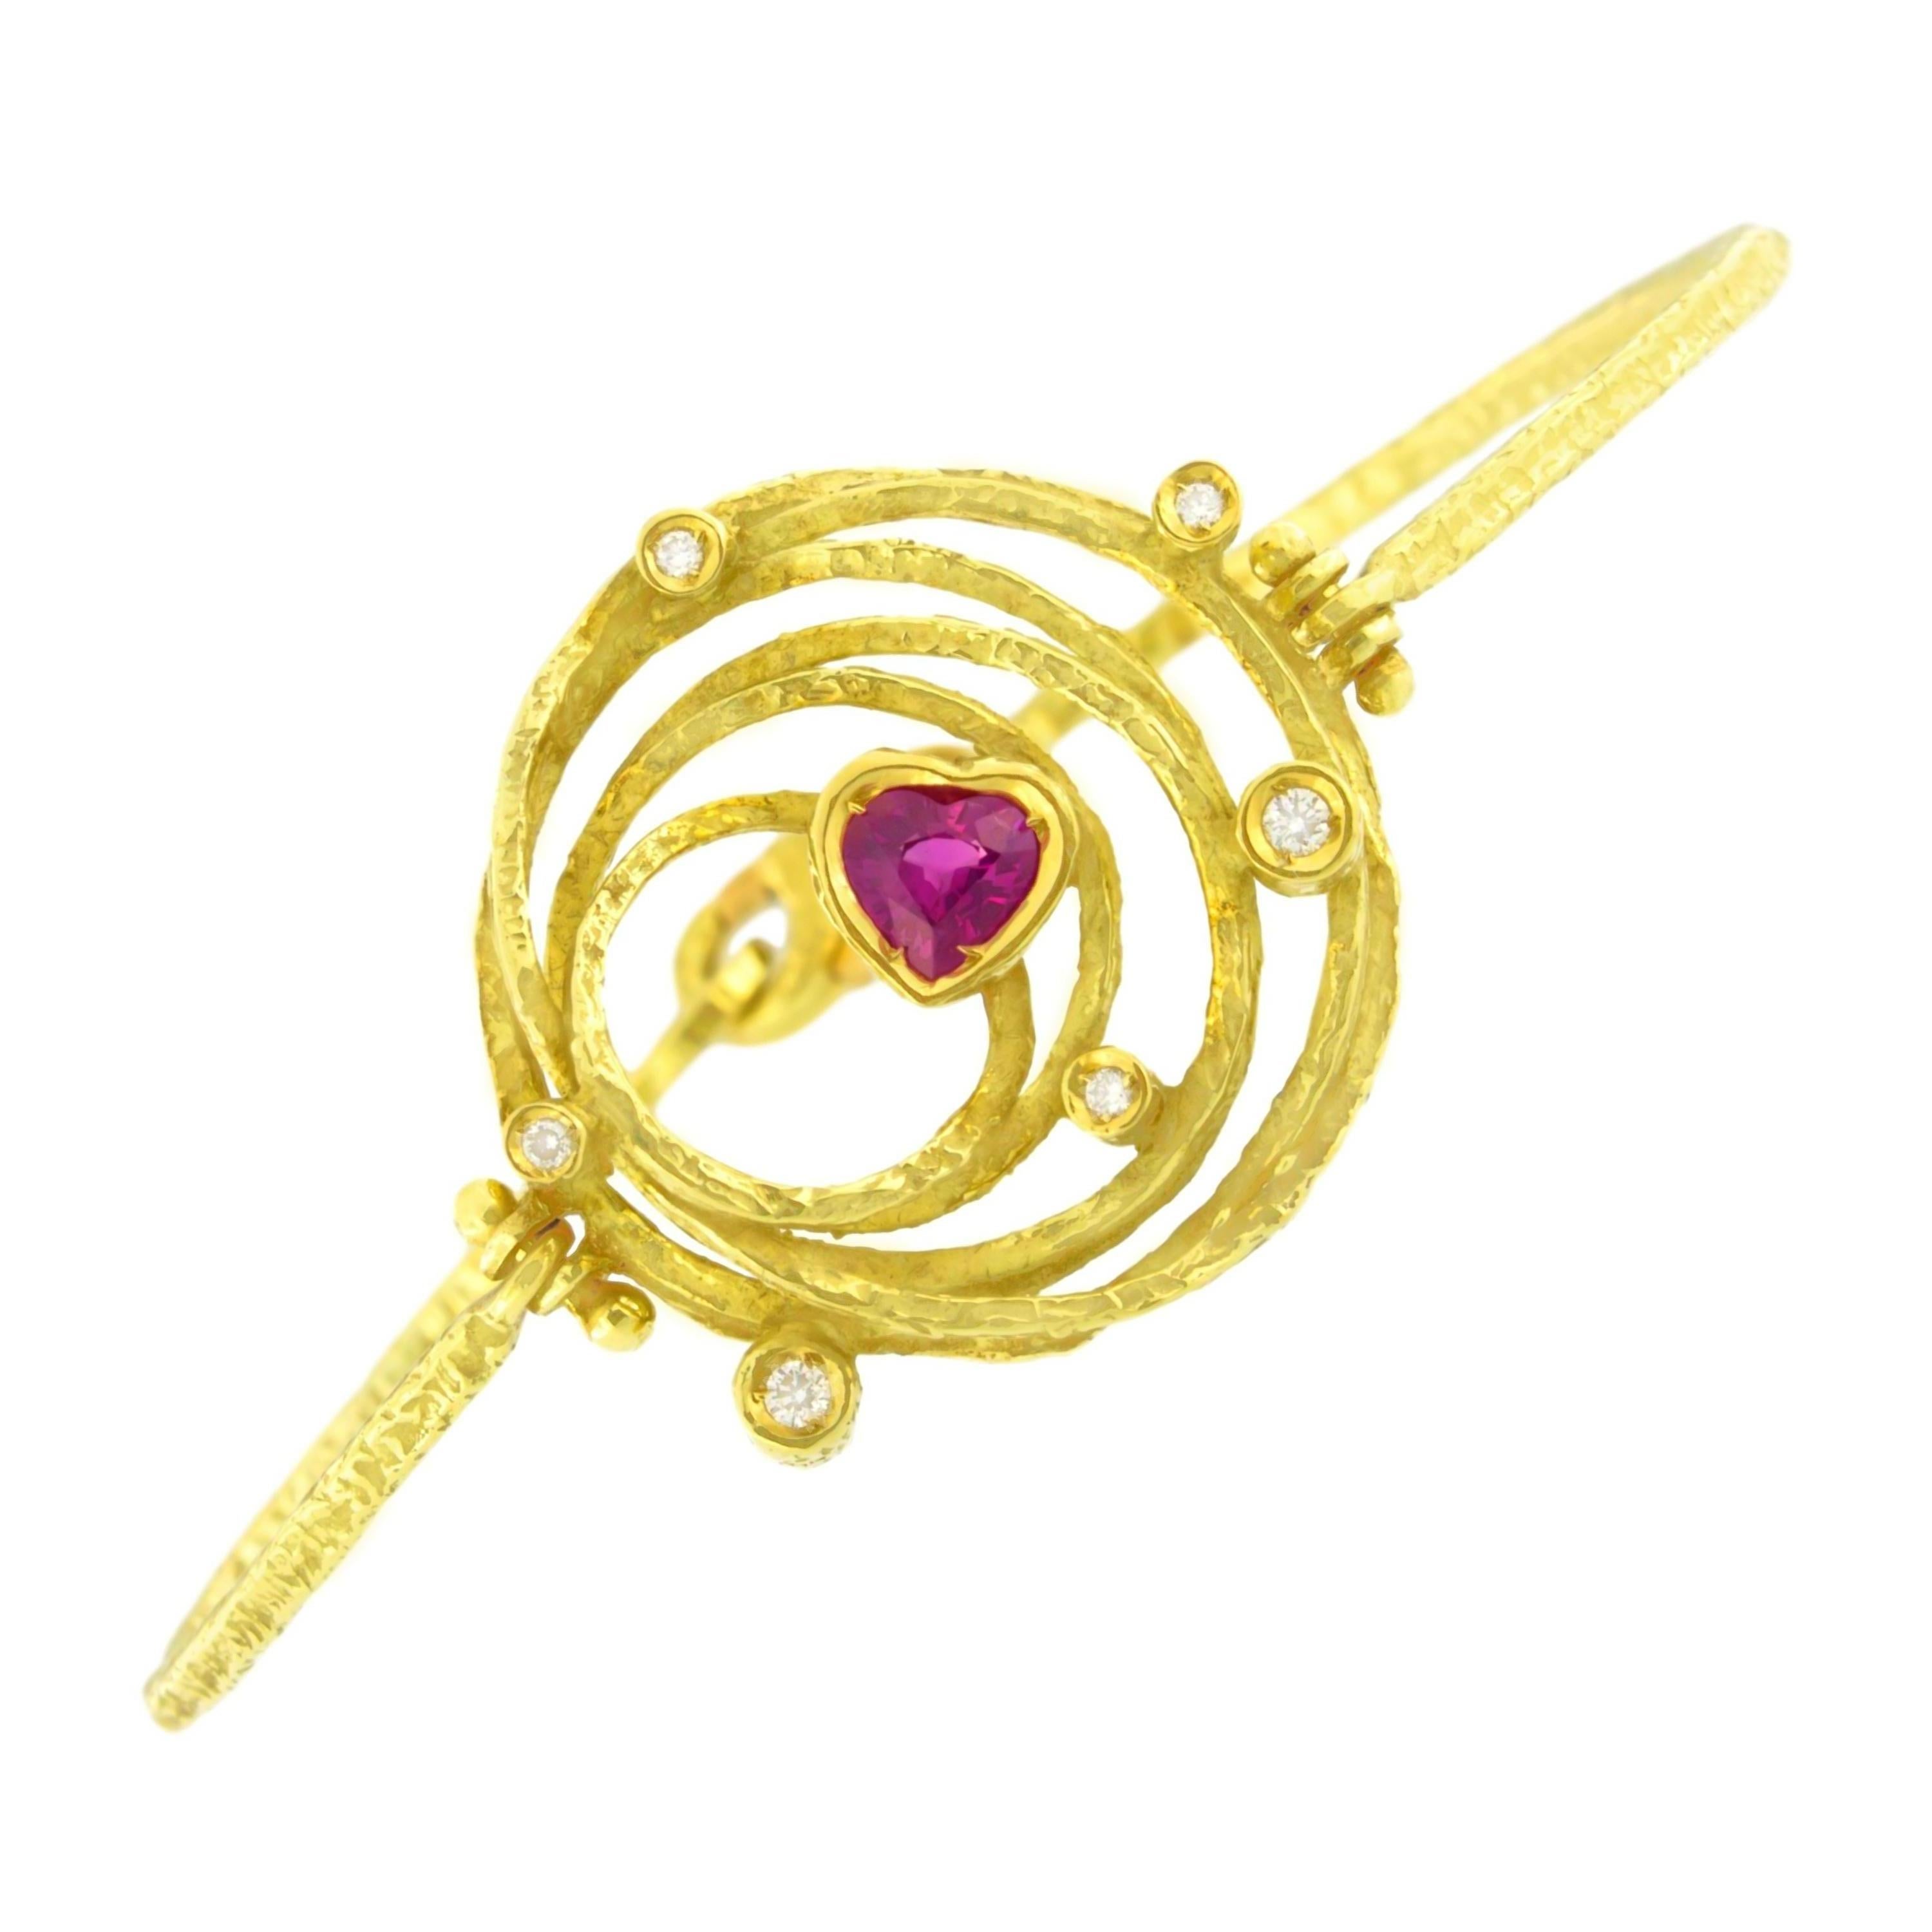 Exquis bracelet moderne en or jaune satiné avec rubis et diamants en forme de cœur, de la collection 